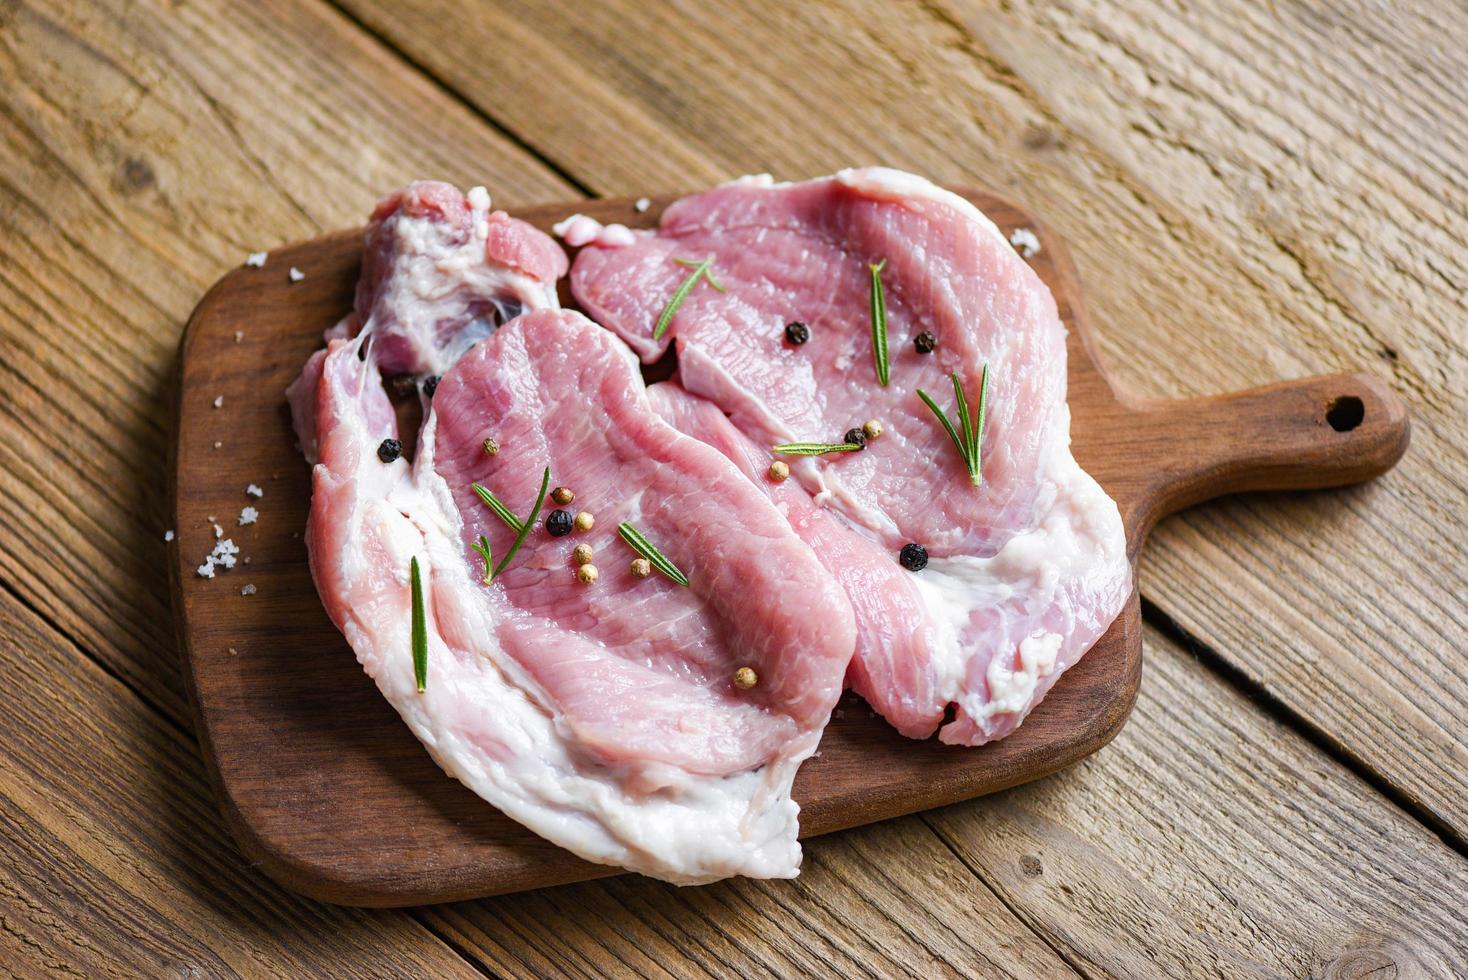 rauw varkensvlees rozemarijn met kruiden en specerijen op houten bord vers varkensvlees foto